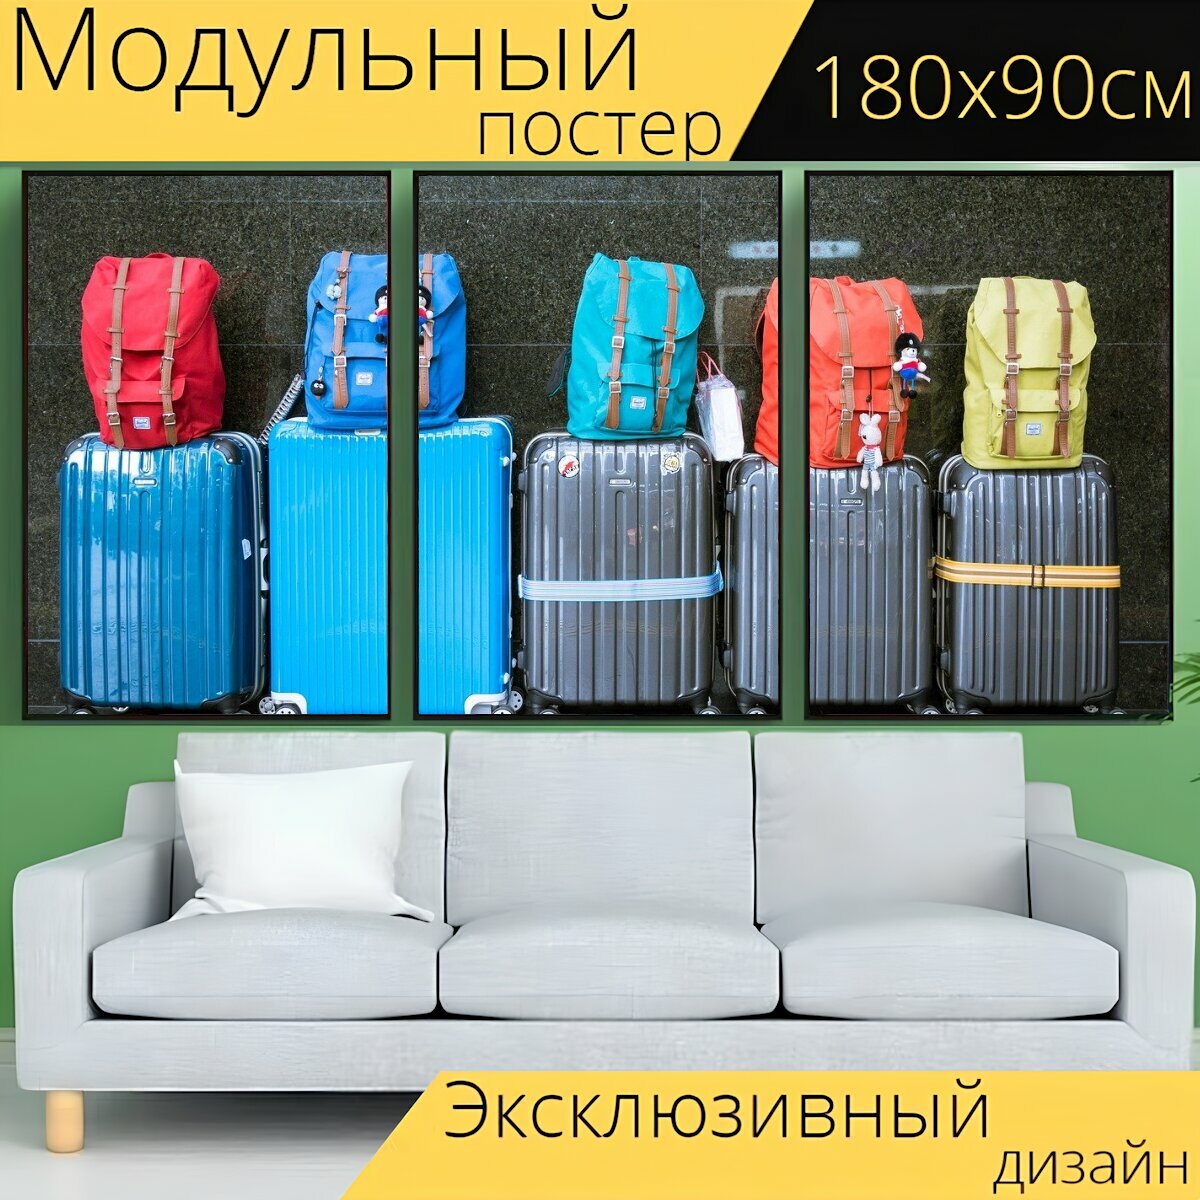 Модульный постер "Багаж, чемоданы, сумки" 180 x 90 см. для интерьера